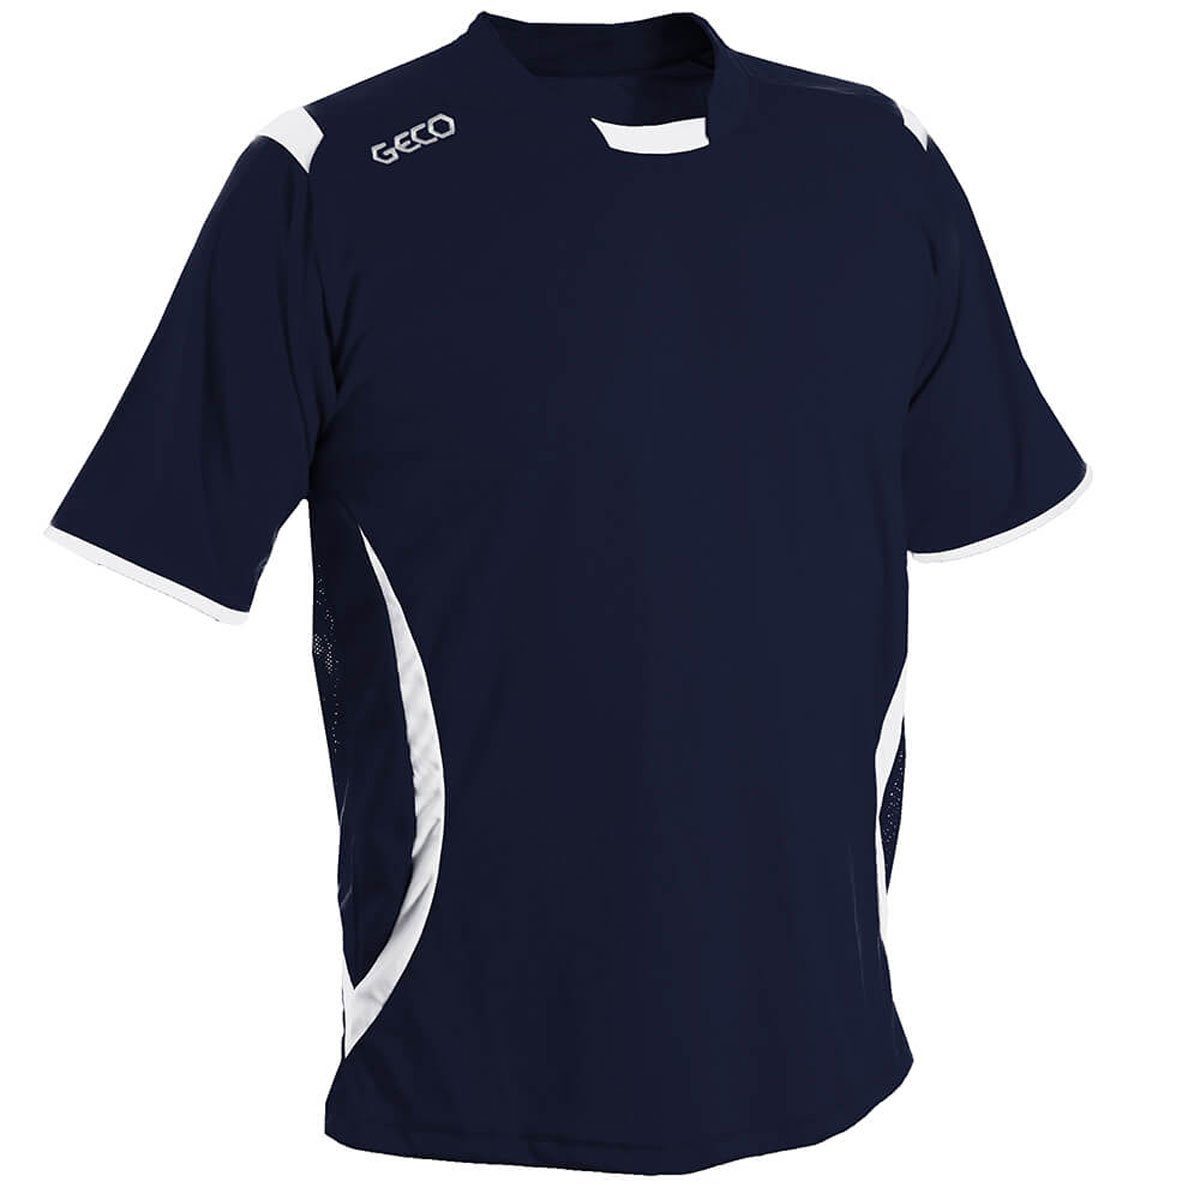 Geco Sportswear Einsätze zweifarbig Trikot Fußballtrikot Geco Fußball Mesh navy/weiß Levante Fußballtrikot seitliche kurzarm